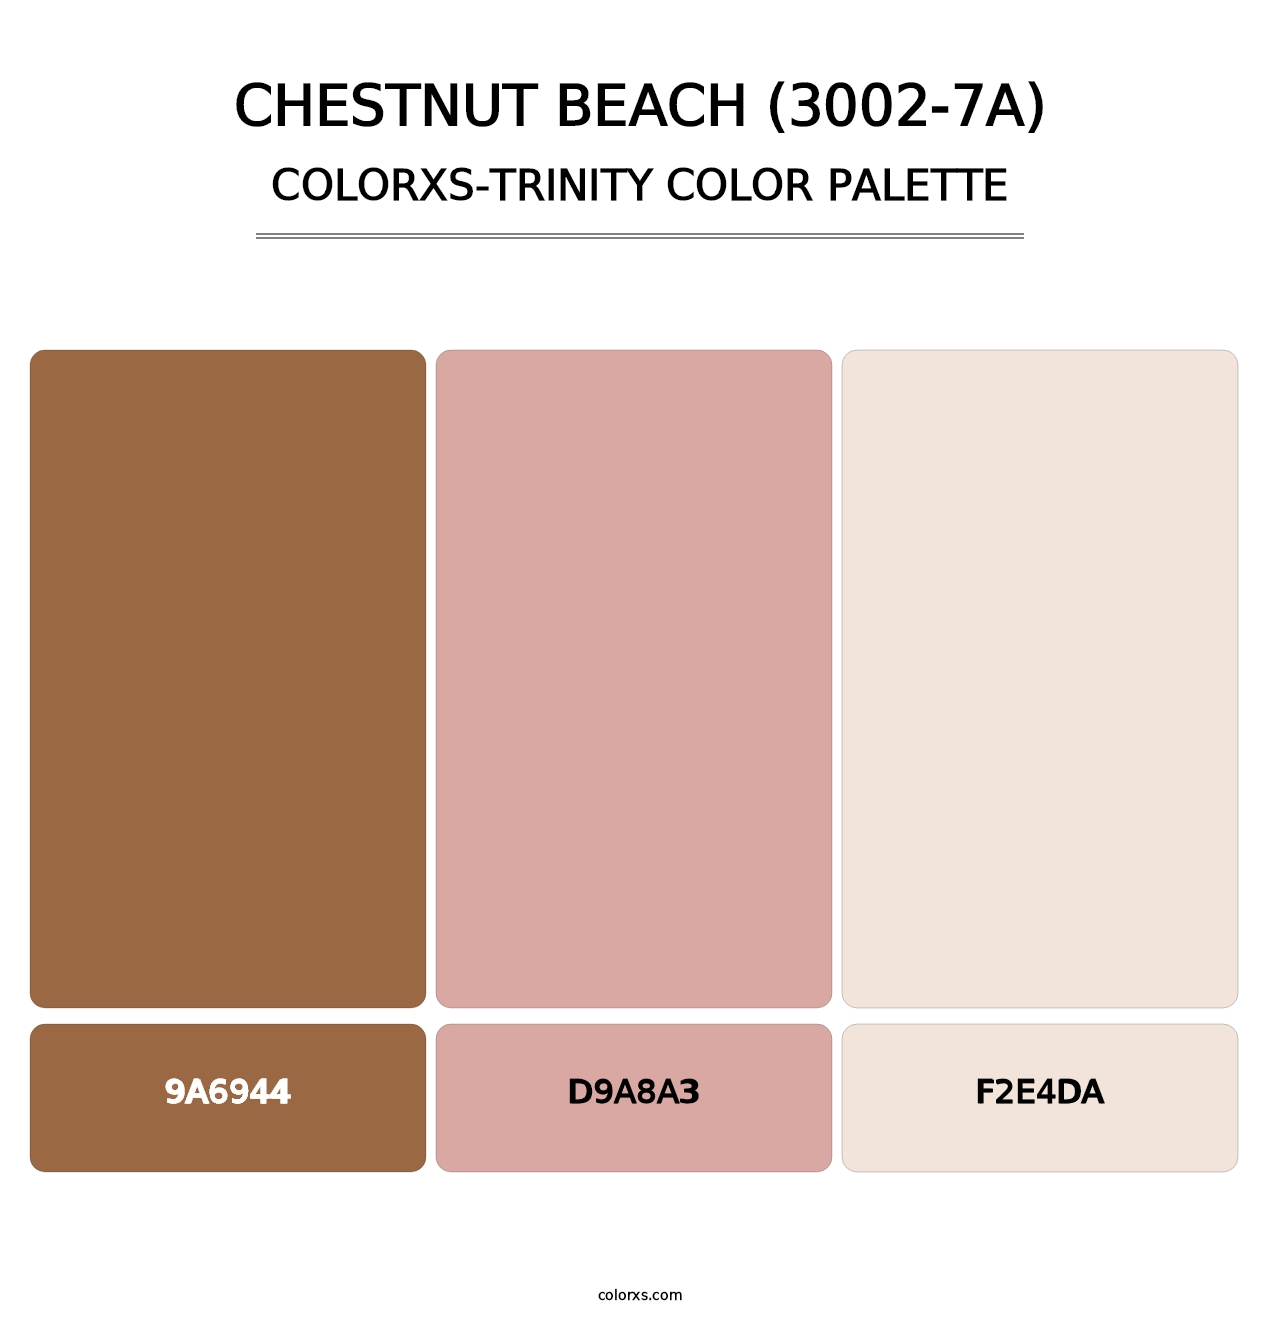 Chestnut Beach (3002-7A) - Colorxs Trinity Palette